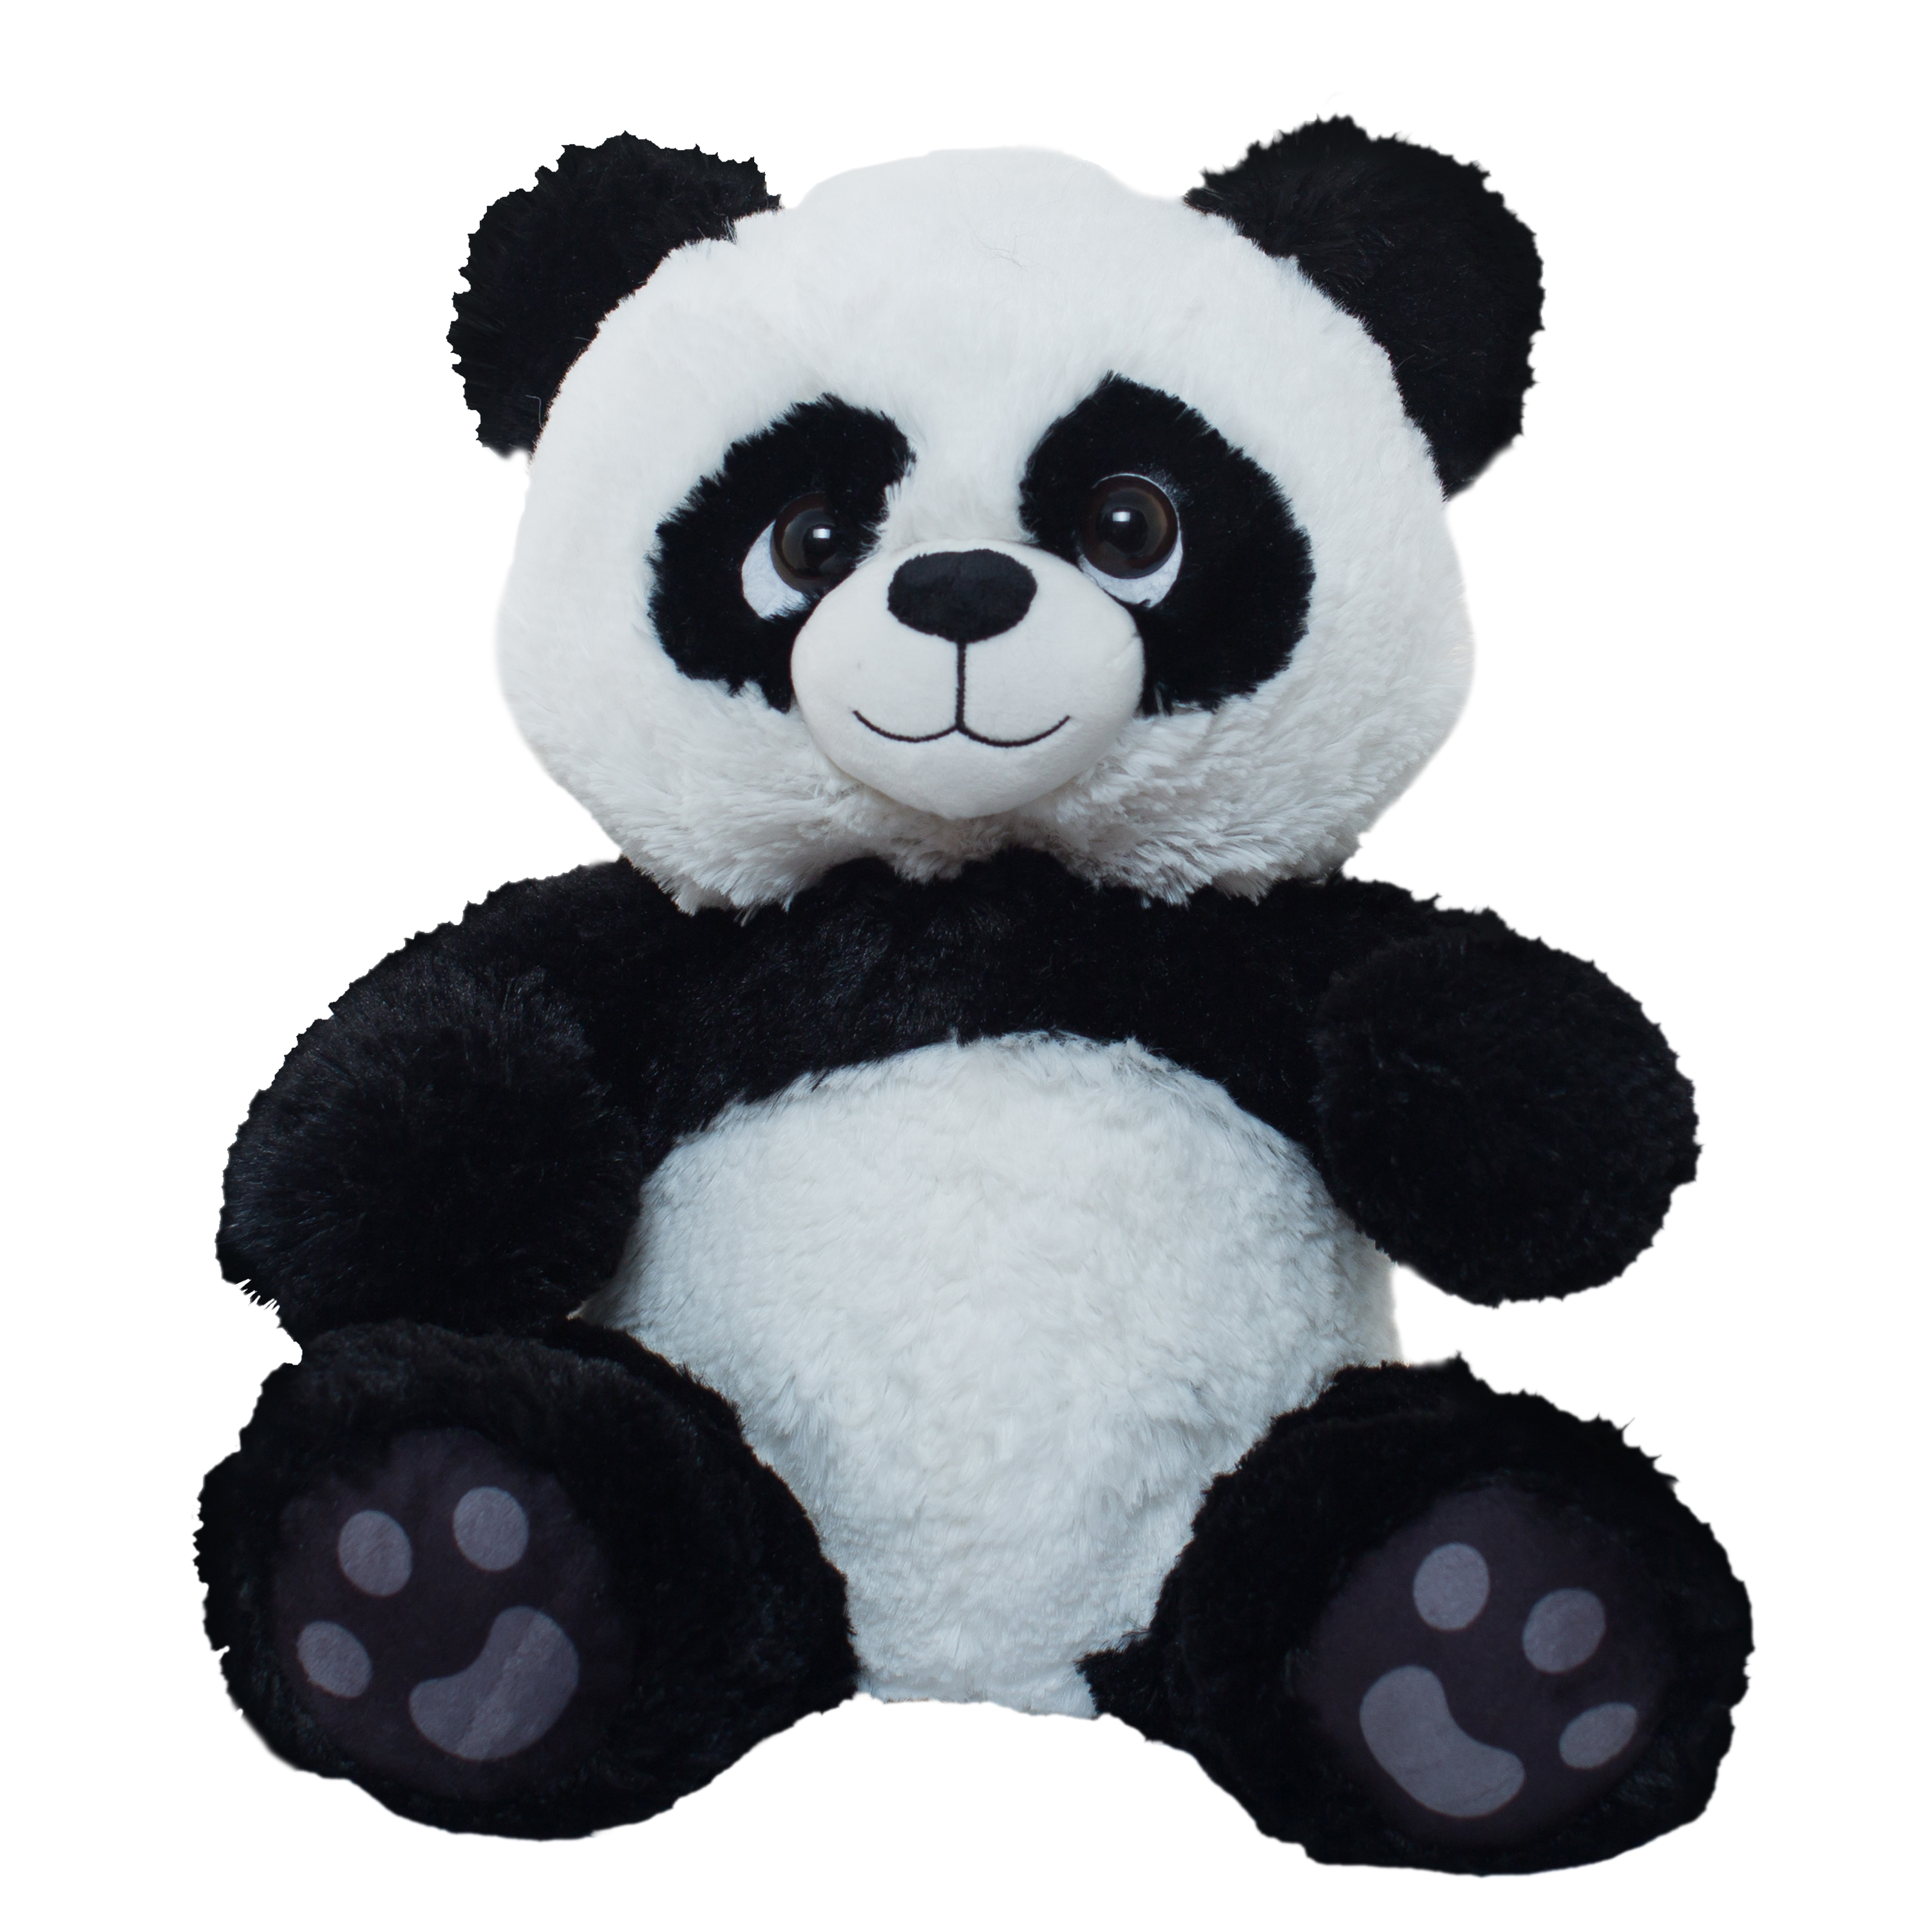 peluche oso panda triston 20 cm   (grupo moya - 11001)